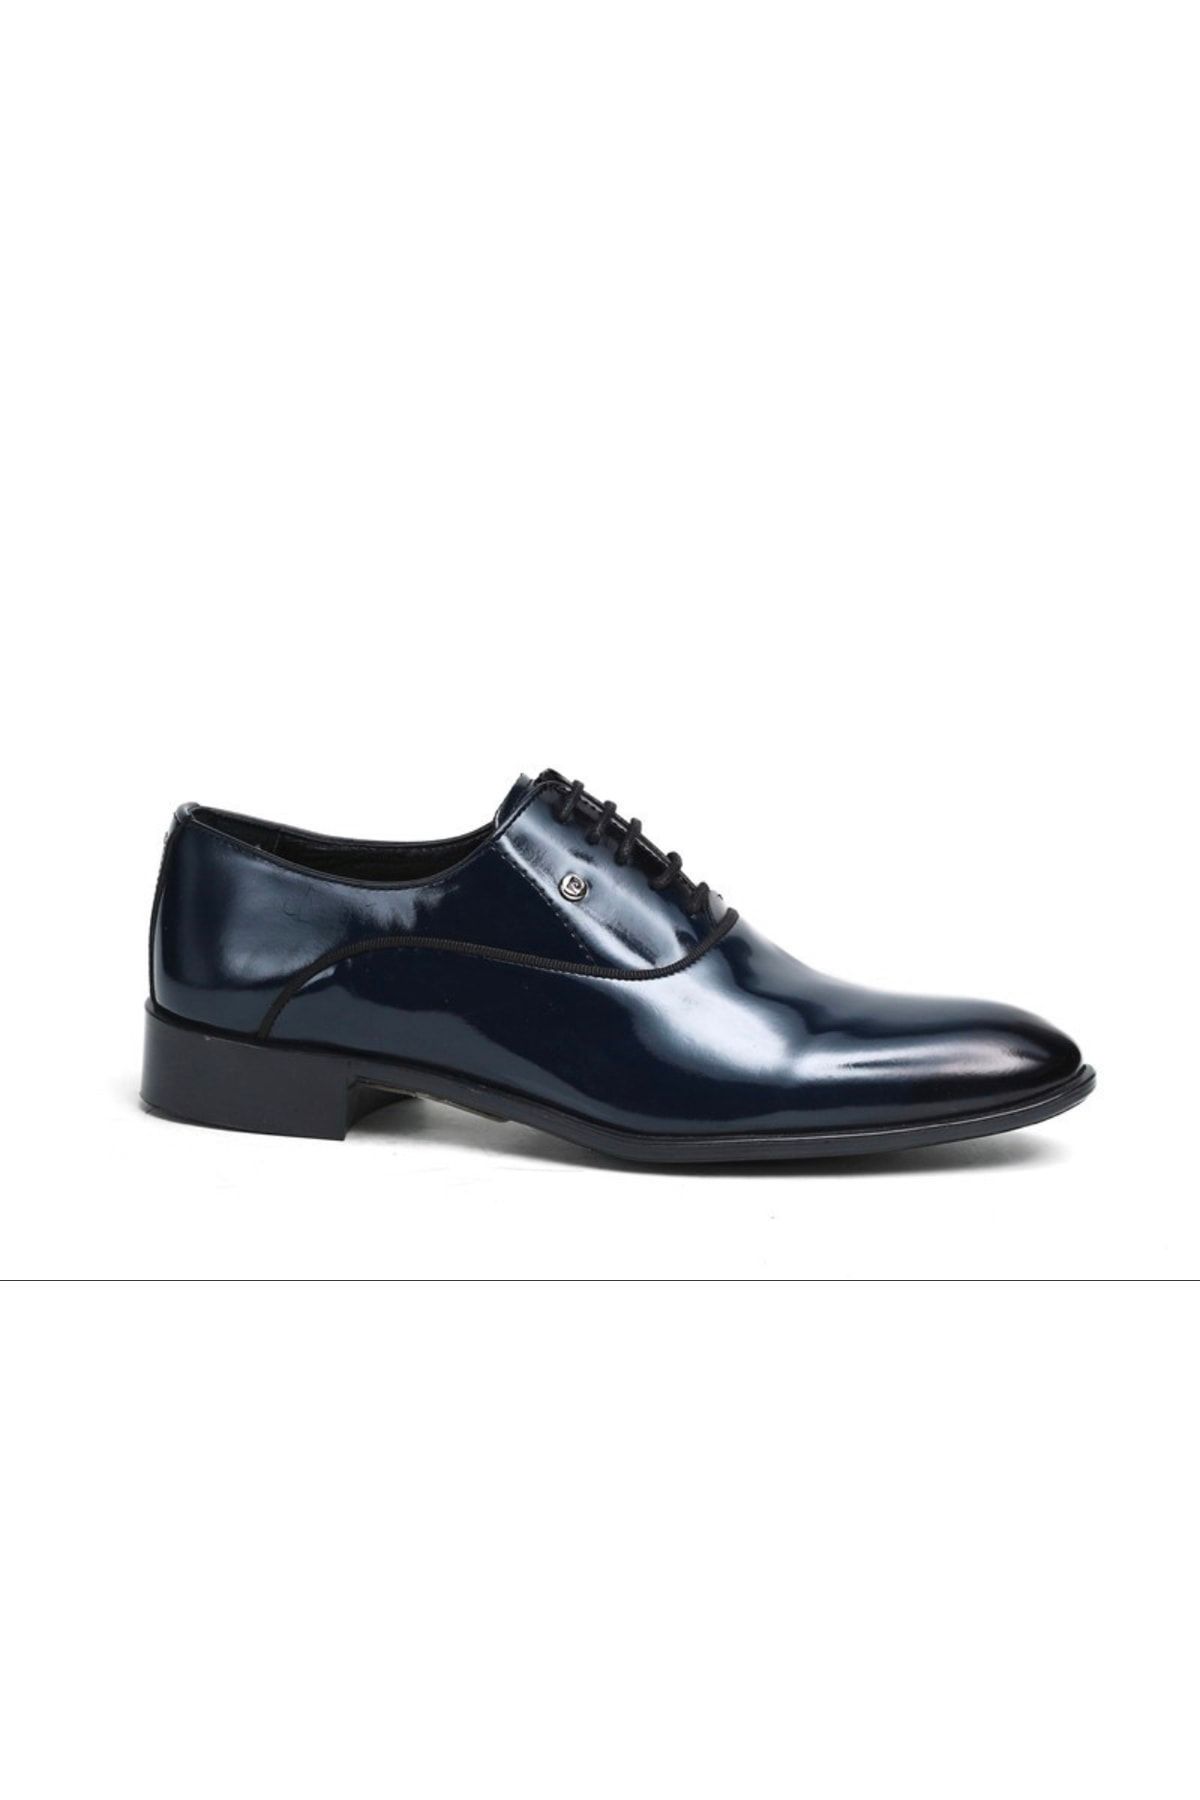 Pierre Cardin Klasik Lacivert Rugan Ayakkabı